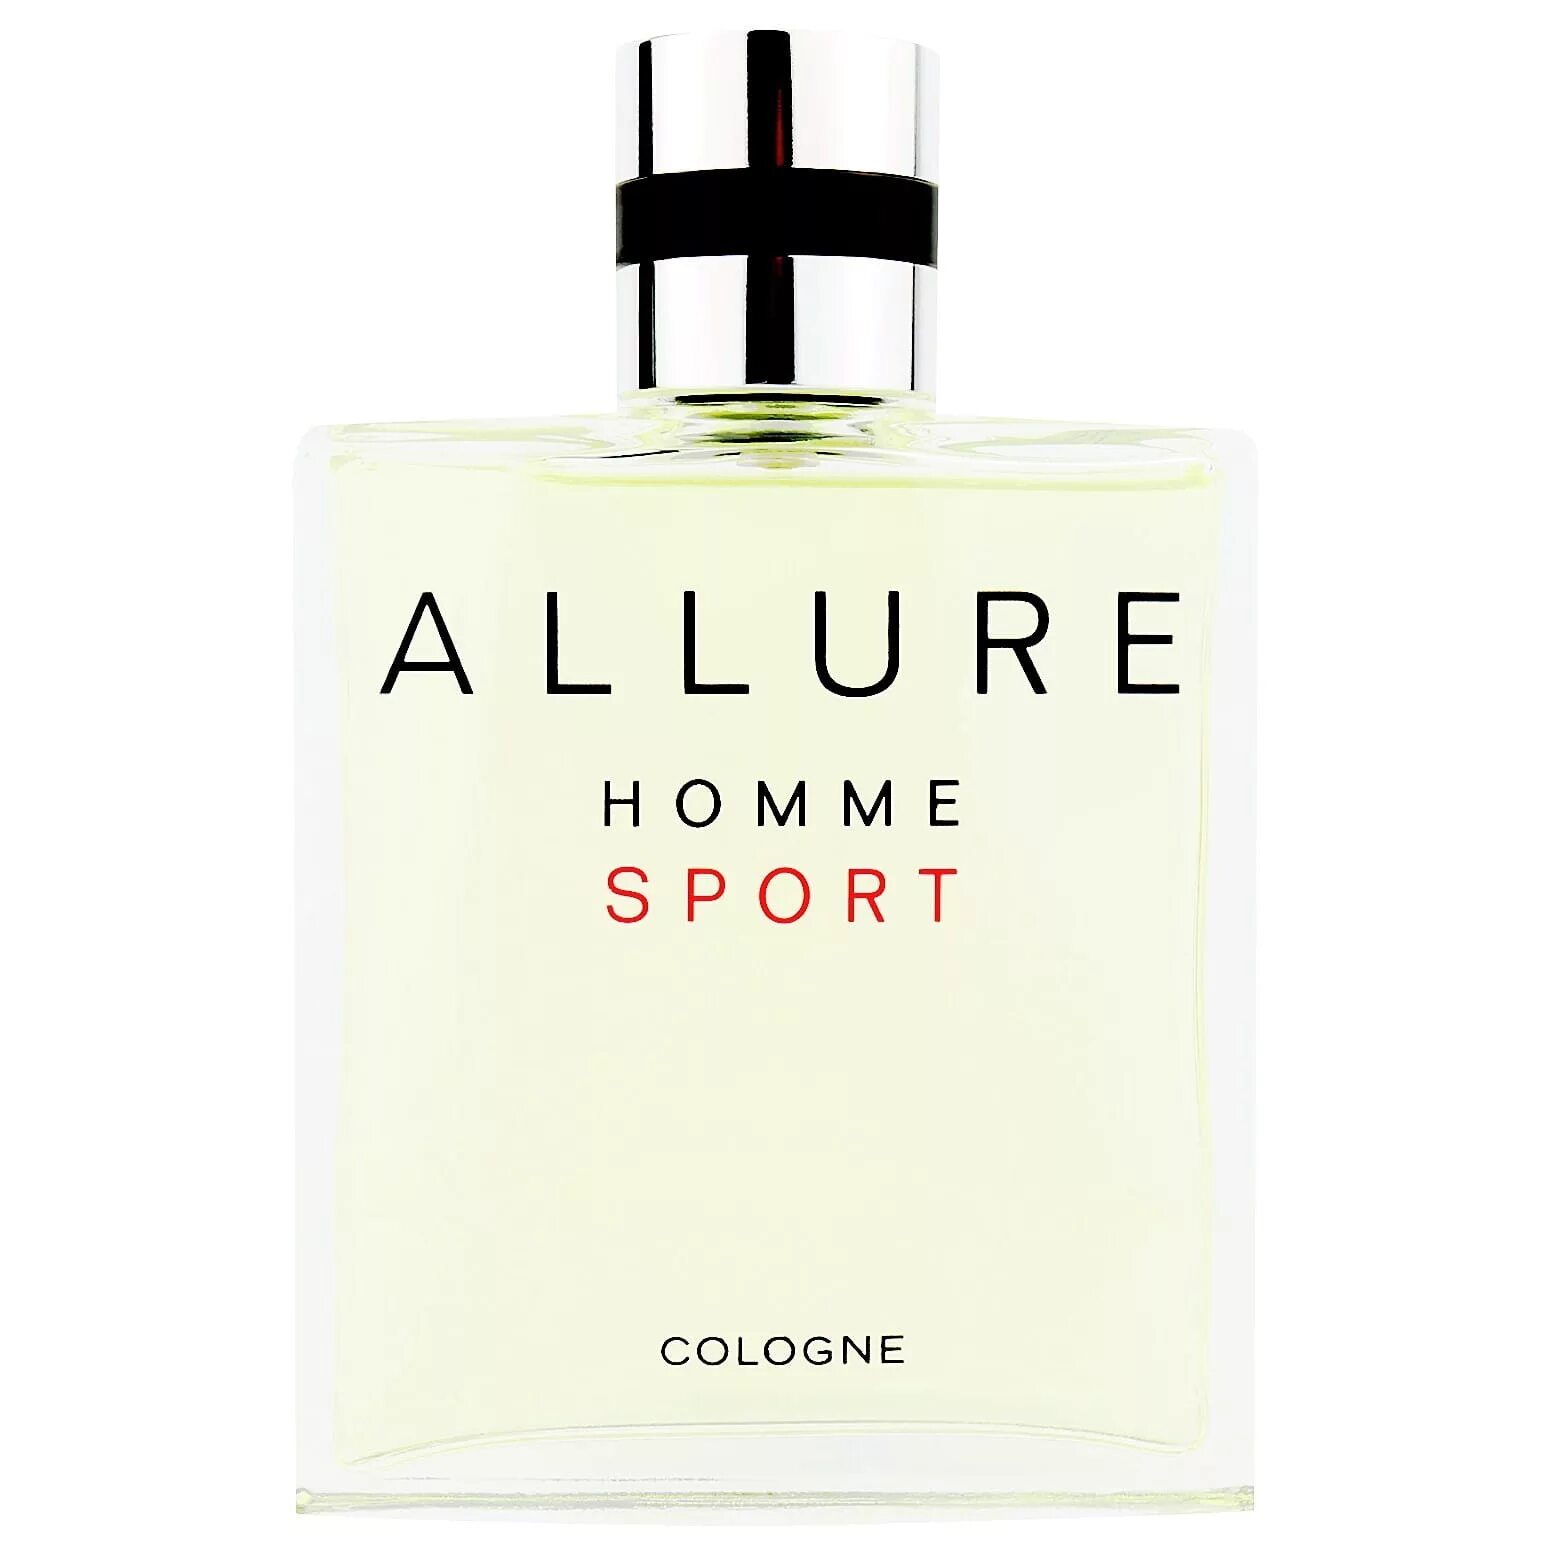 Allure sport cologne. Chanel Allure Sport. Chanel Allure homme Sport. Chanel Allure homme Sport Cologne. Chanel Allure homme Sport Cologne 100 ml.